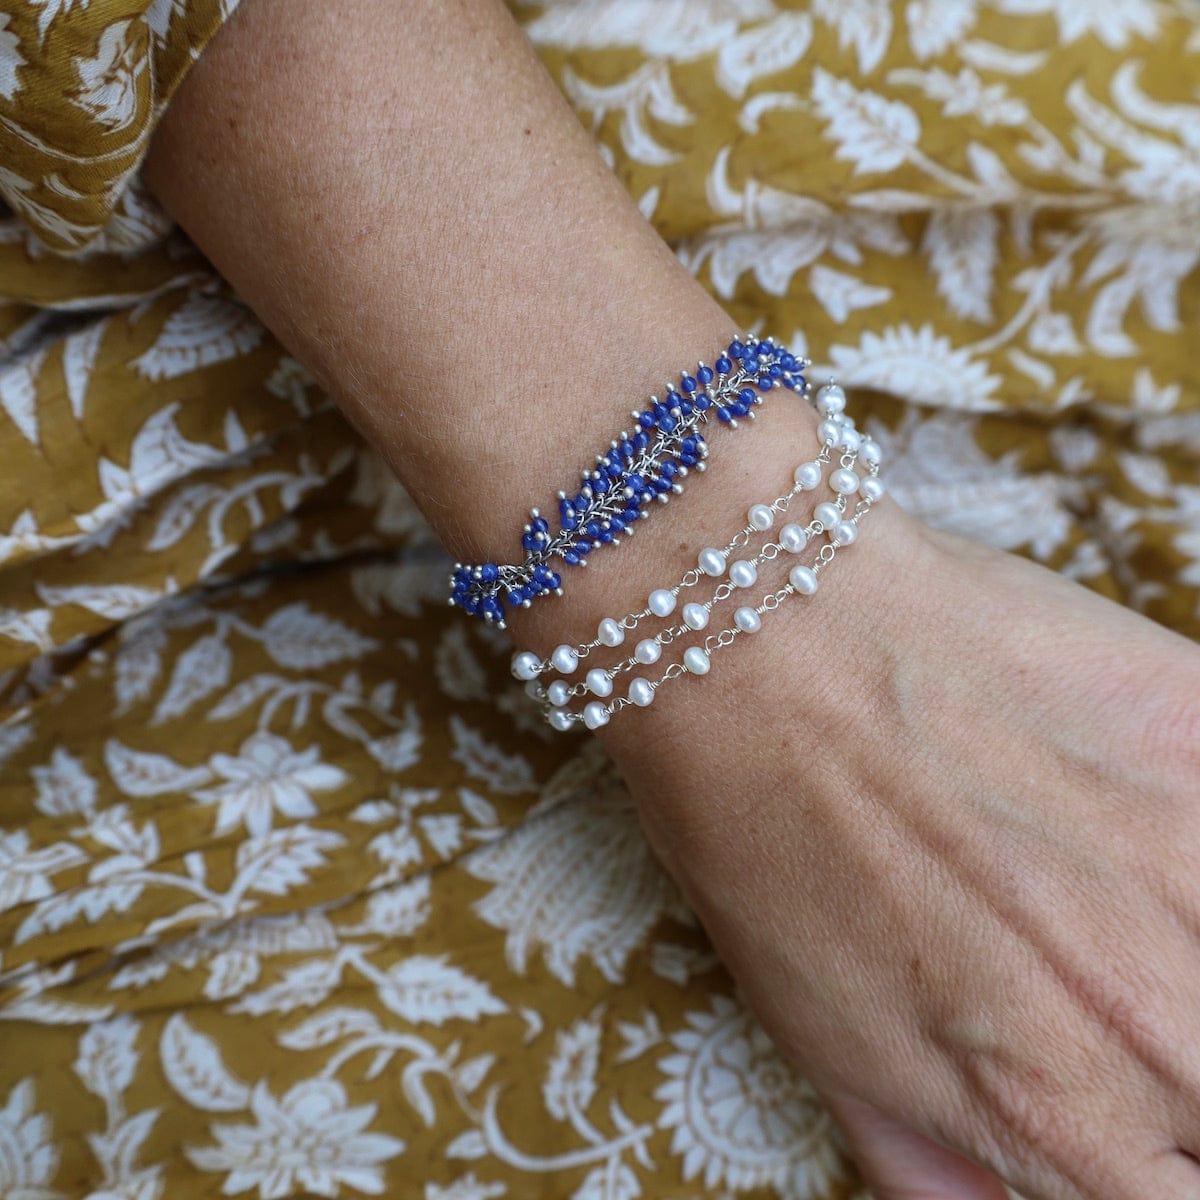 BRC-JM Handmade Multi Bead Chain of White Pearls Bracelet